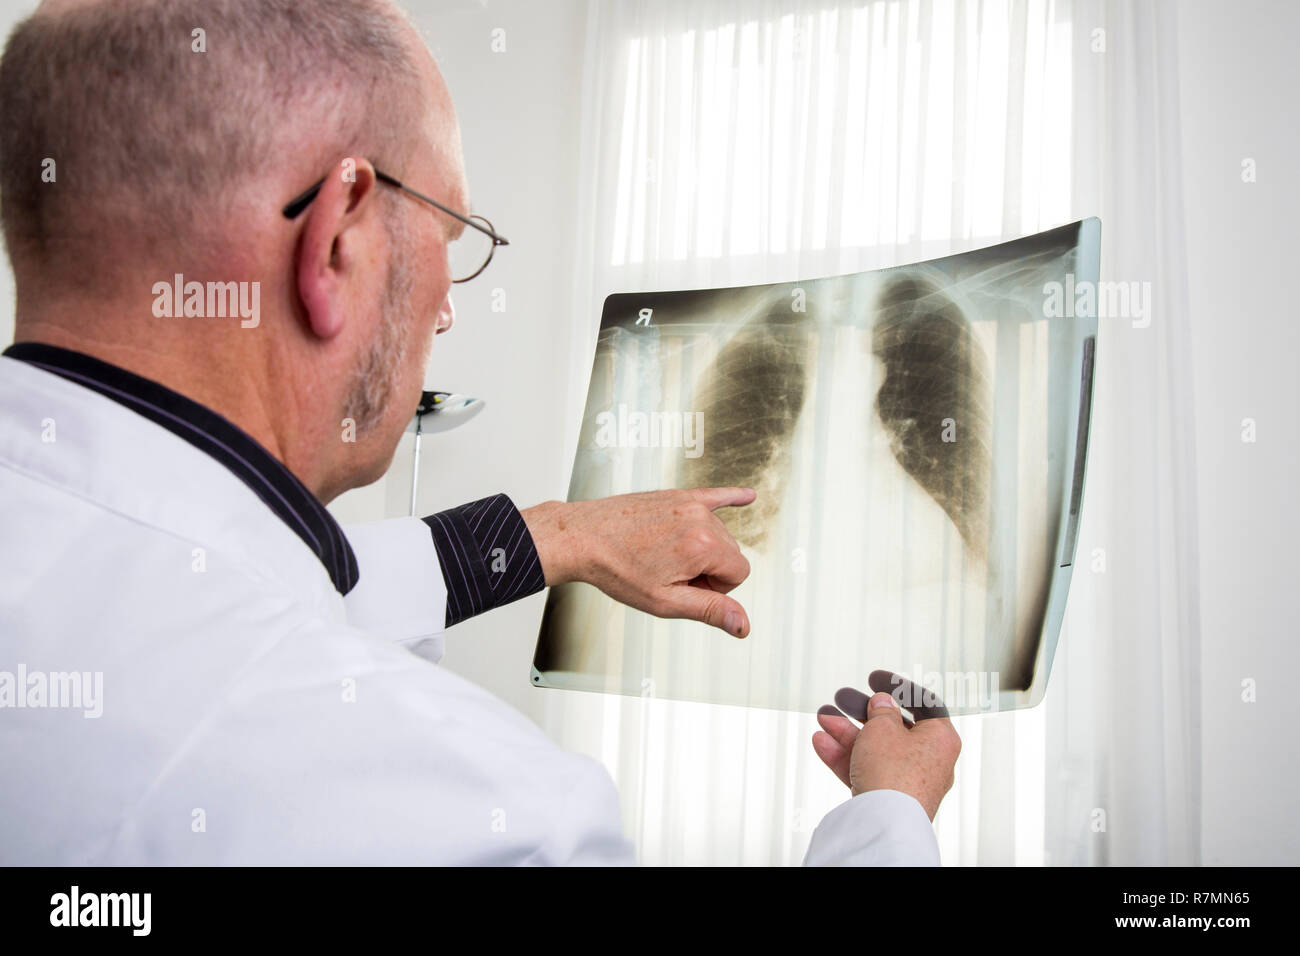 Medico controllo dell'immagine a raggi x di un polmone, Germania Foto Stock